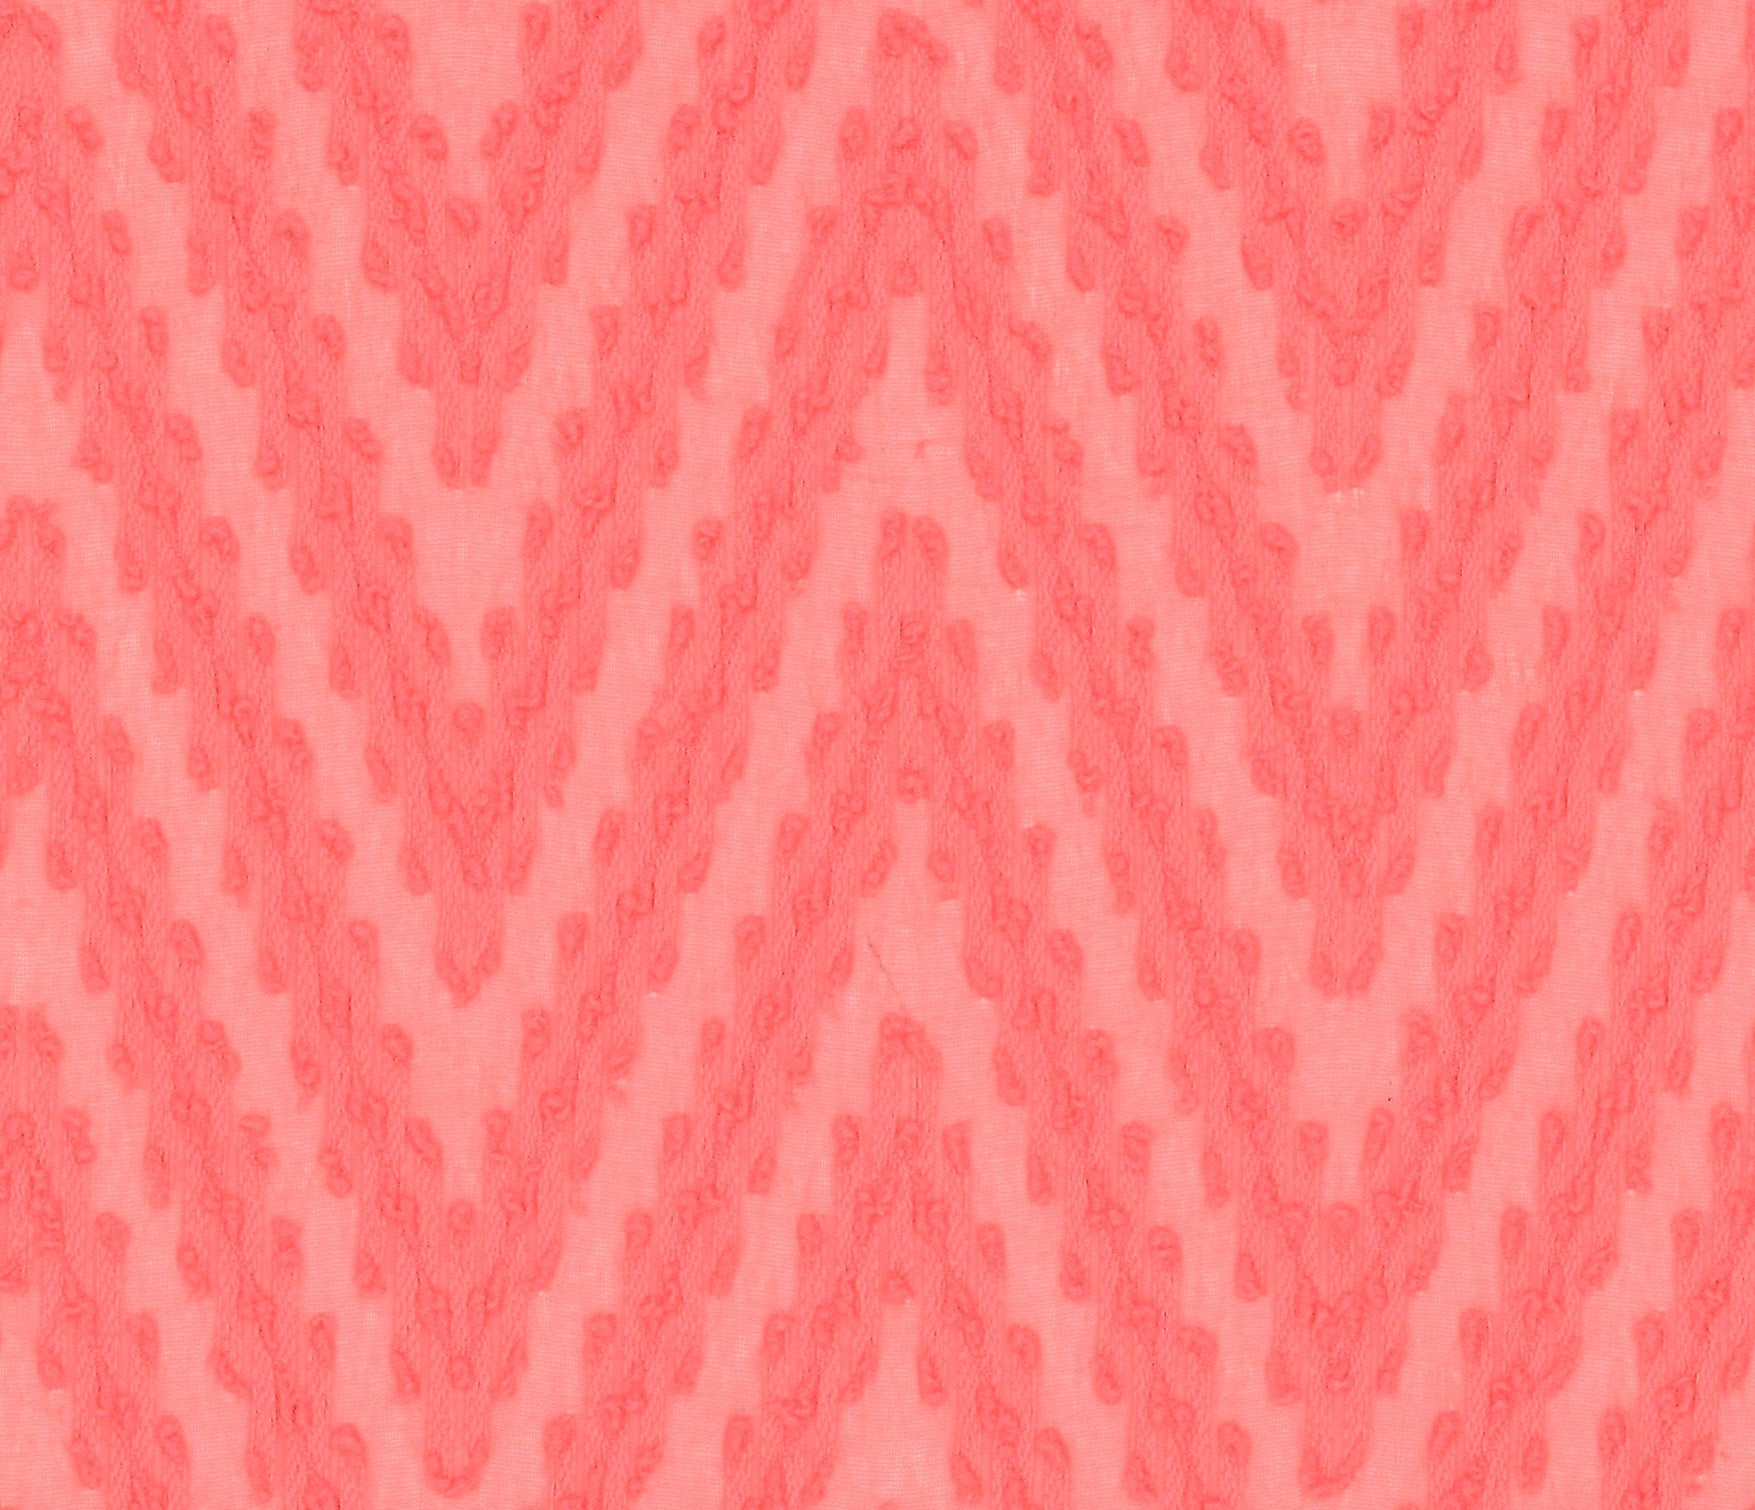 9958-03 Coral Red Polyester Chiffon Winding Pattern Jacquard Plain Dyed 100% 110g/yd 58" chiffon jacquard plain dyed polyester red woven Chiffon, Jacquard - knit fabric - woven fabric - fabric company - fabric wholesale - fabric b2b - fabric factory - high quality fabric - hong kong fabric - fabric hk - acetate fabric - cotton fabric - linen fabric - metallic fabric - nylon fabric - polyester fabric - spandex fabric - chun wing hing - cwh hk - fabric worldwide ship - 針織布 - 梳織布 - 布料公司- 布料批發 - 香港布料 - 秦榮興